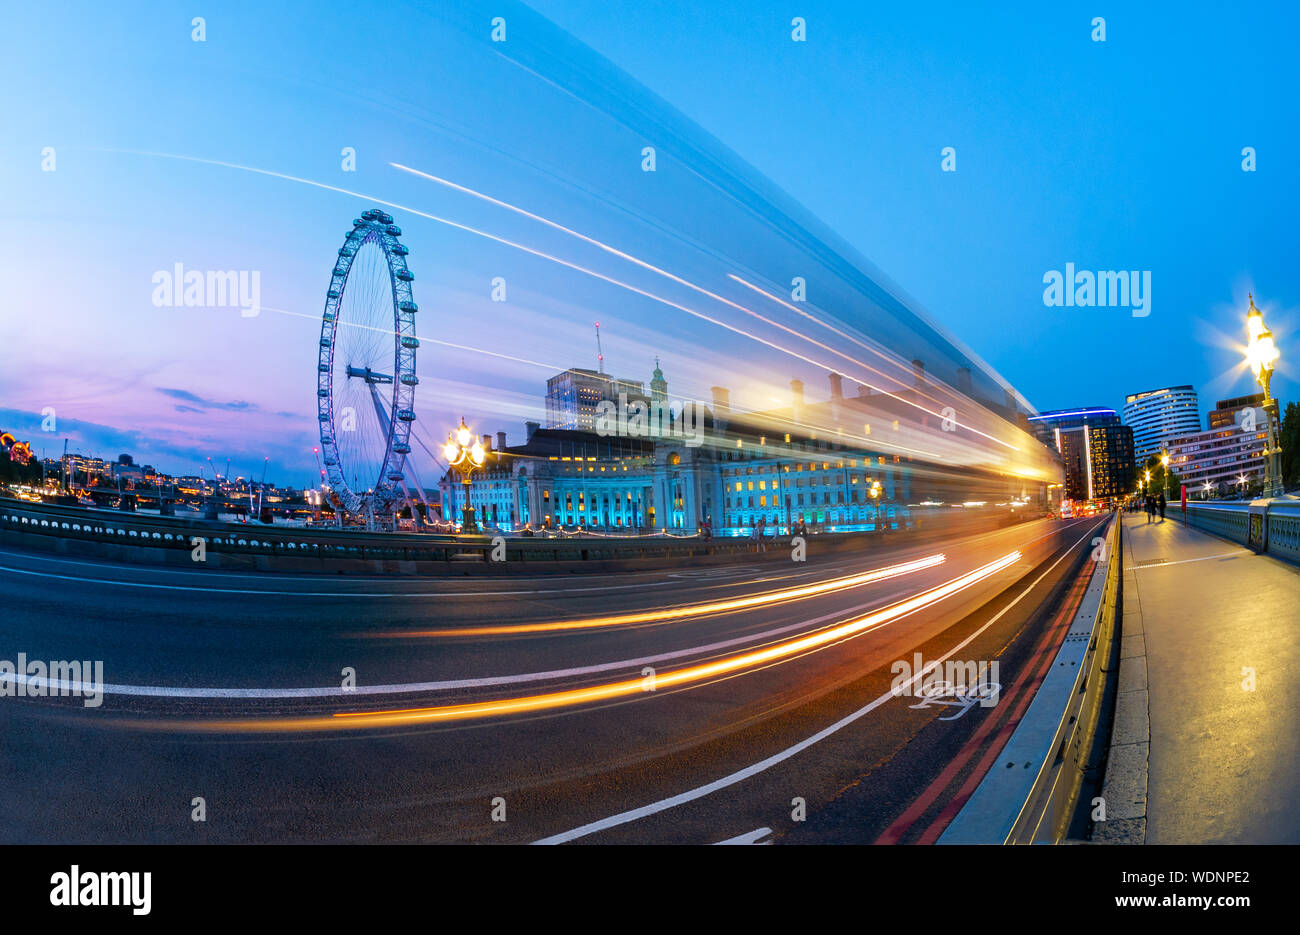 Rues de la région de London à l'heure bleue, vue depuis le pont de Westminster sur l'œil et des traces de roues de voiture sur la route, en Angleterre, Royaume-Uni Banque D'Images